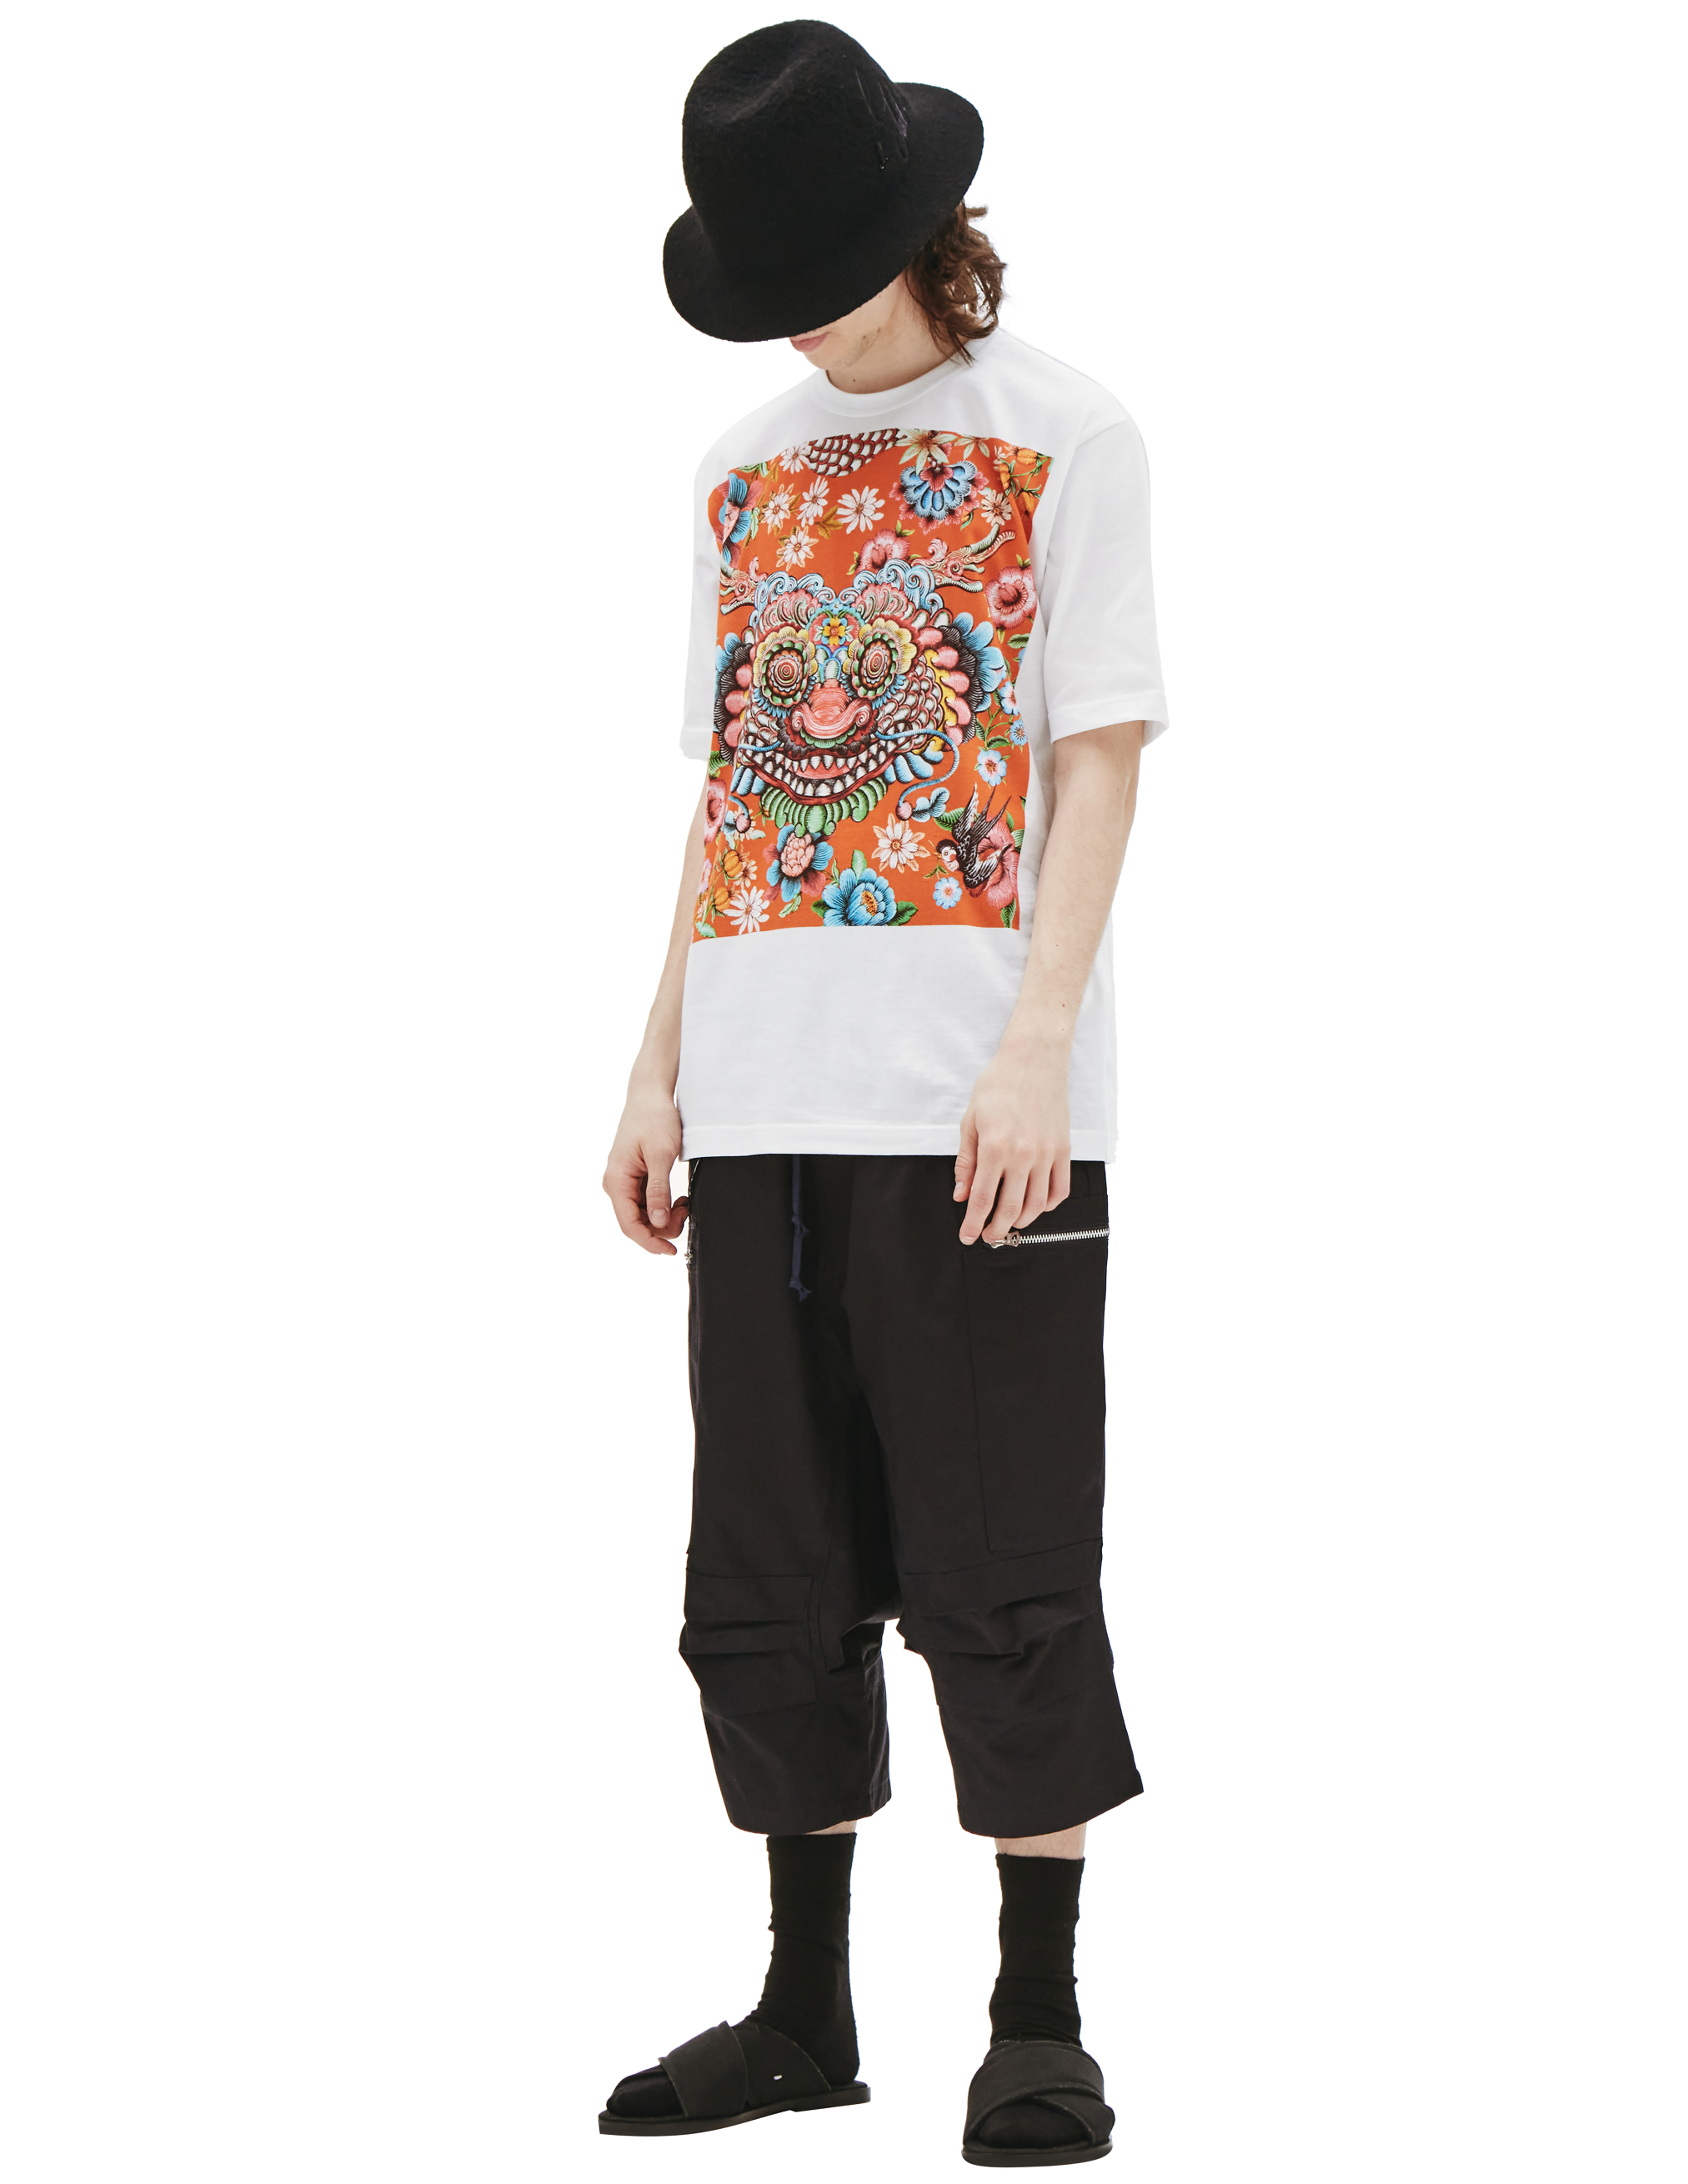 Хлопковая футболка с принтом дракона Junya Watanabe WI-T005-051-1, размер XL;L - фото 1